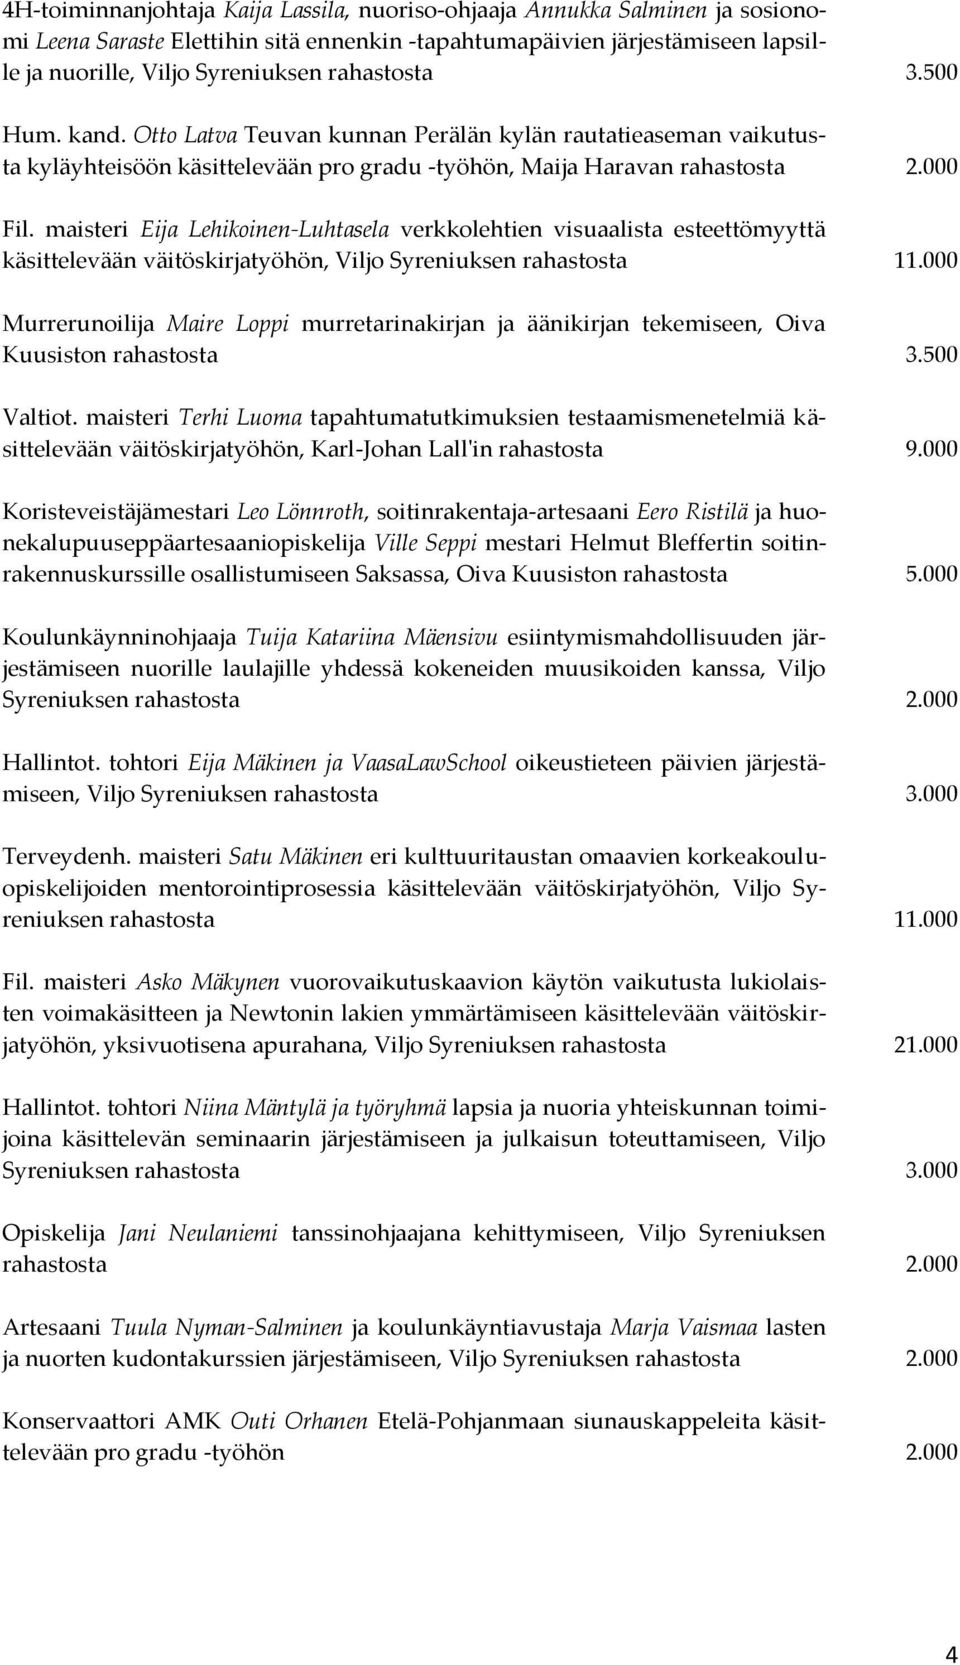 maisteri Eija Lehikoinen-Luhtasela verkkolehtien visuaalista esteettömyyttä käsittelevään väitöskirjatyöhön, Viljo Syreniuksen rahastosta 11.